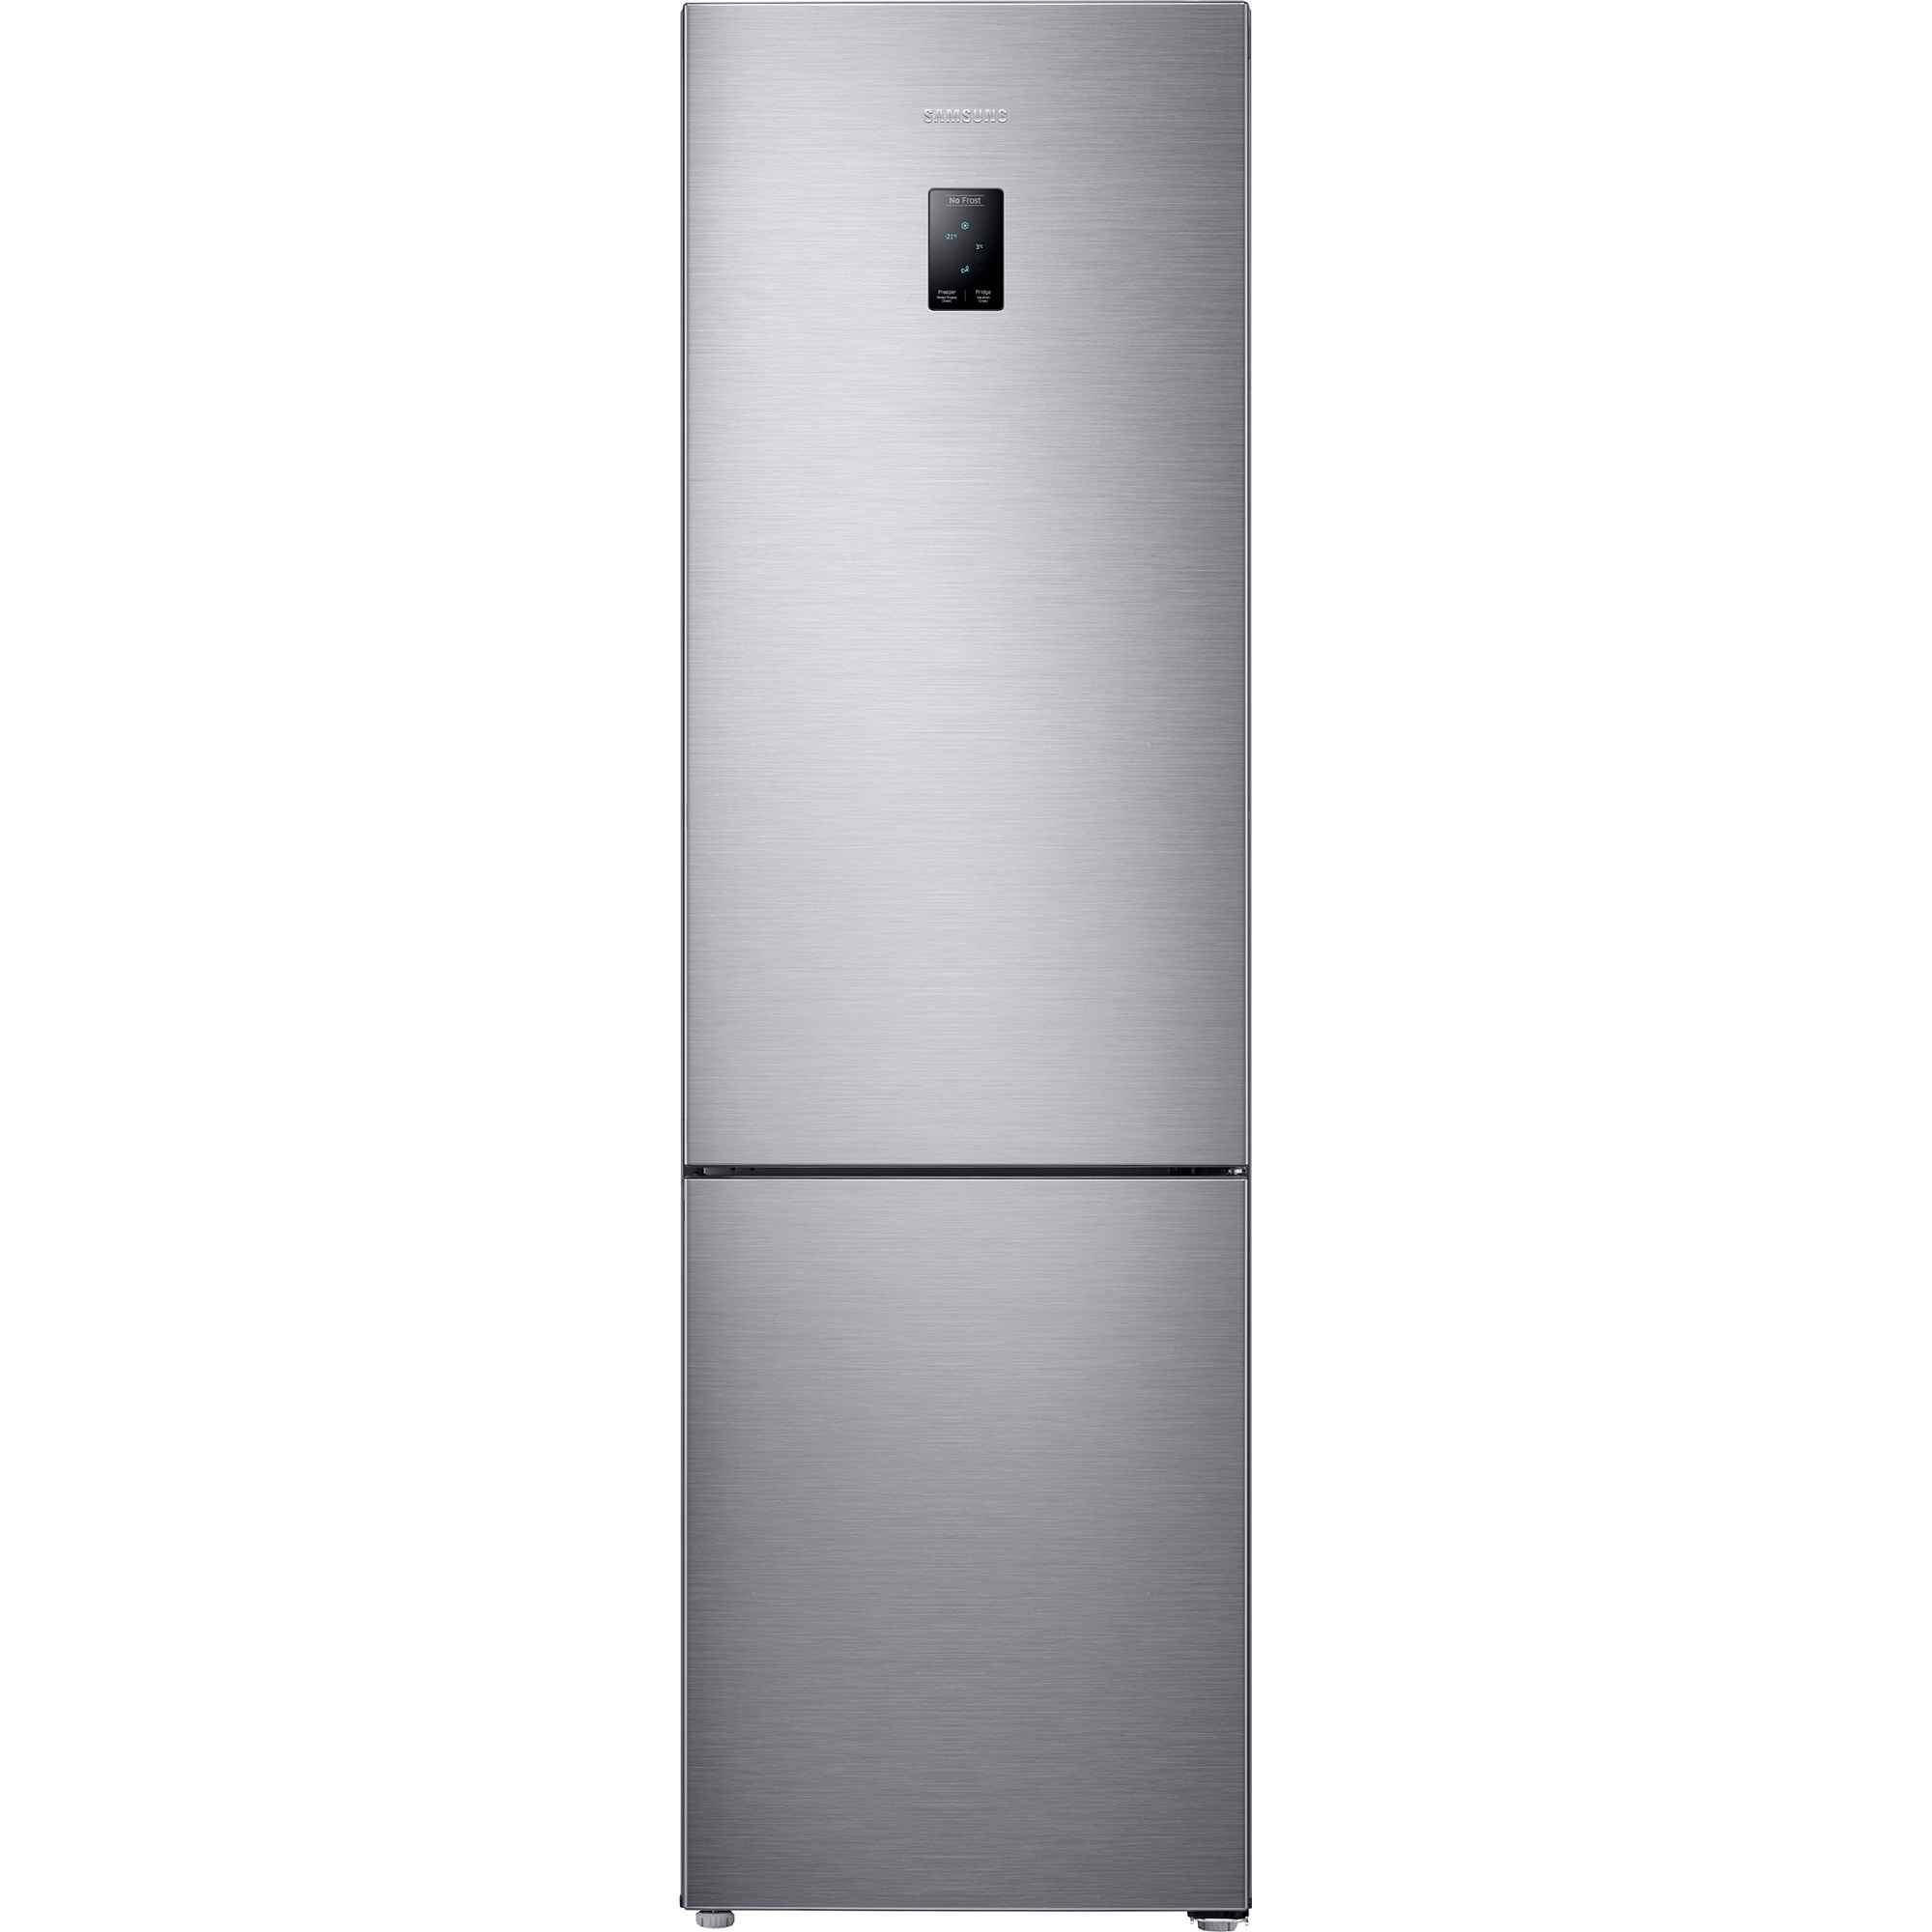 Хладилник Samsung RB37J5215SS/EF с обем от 367 л.